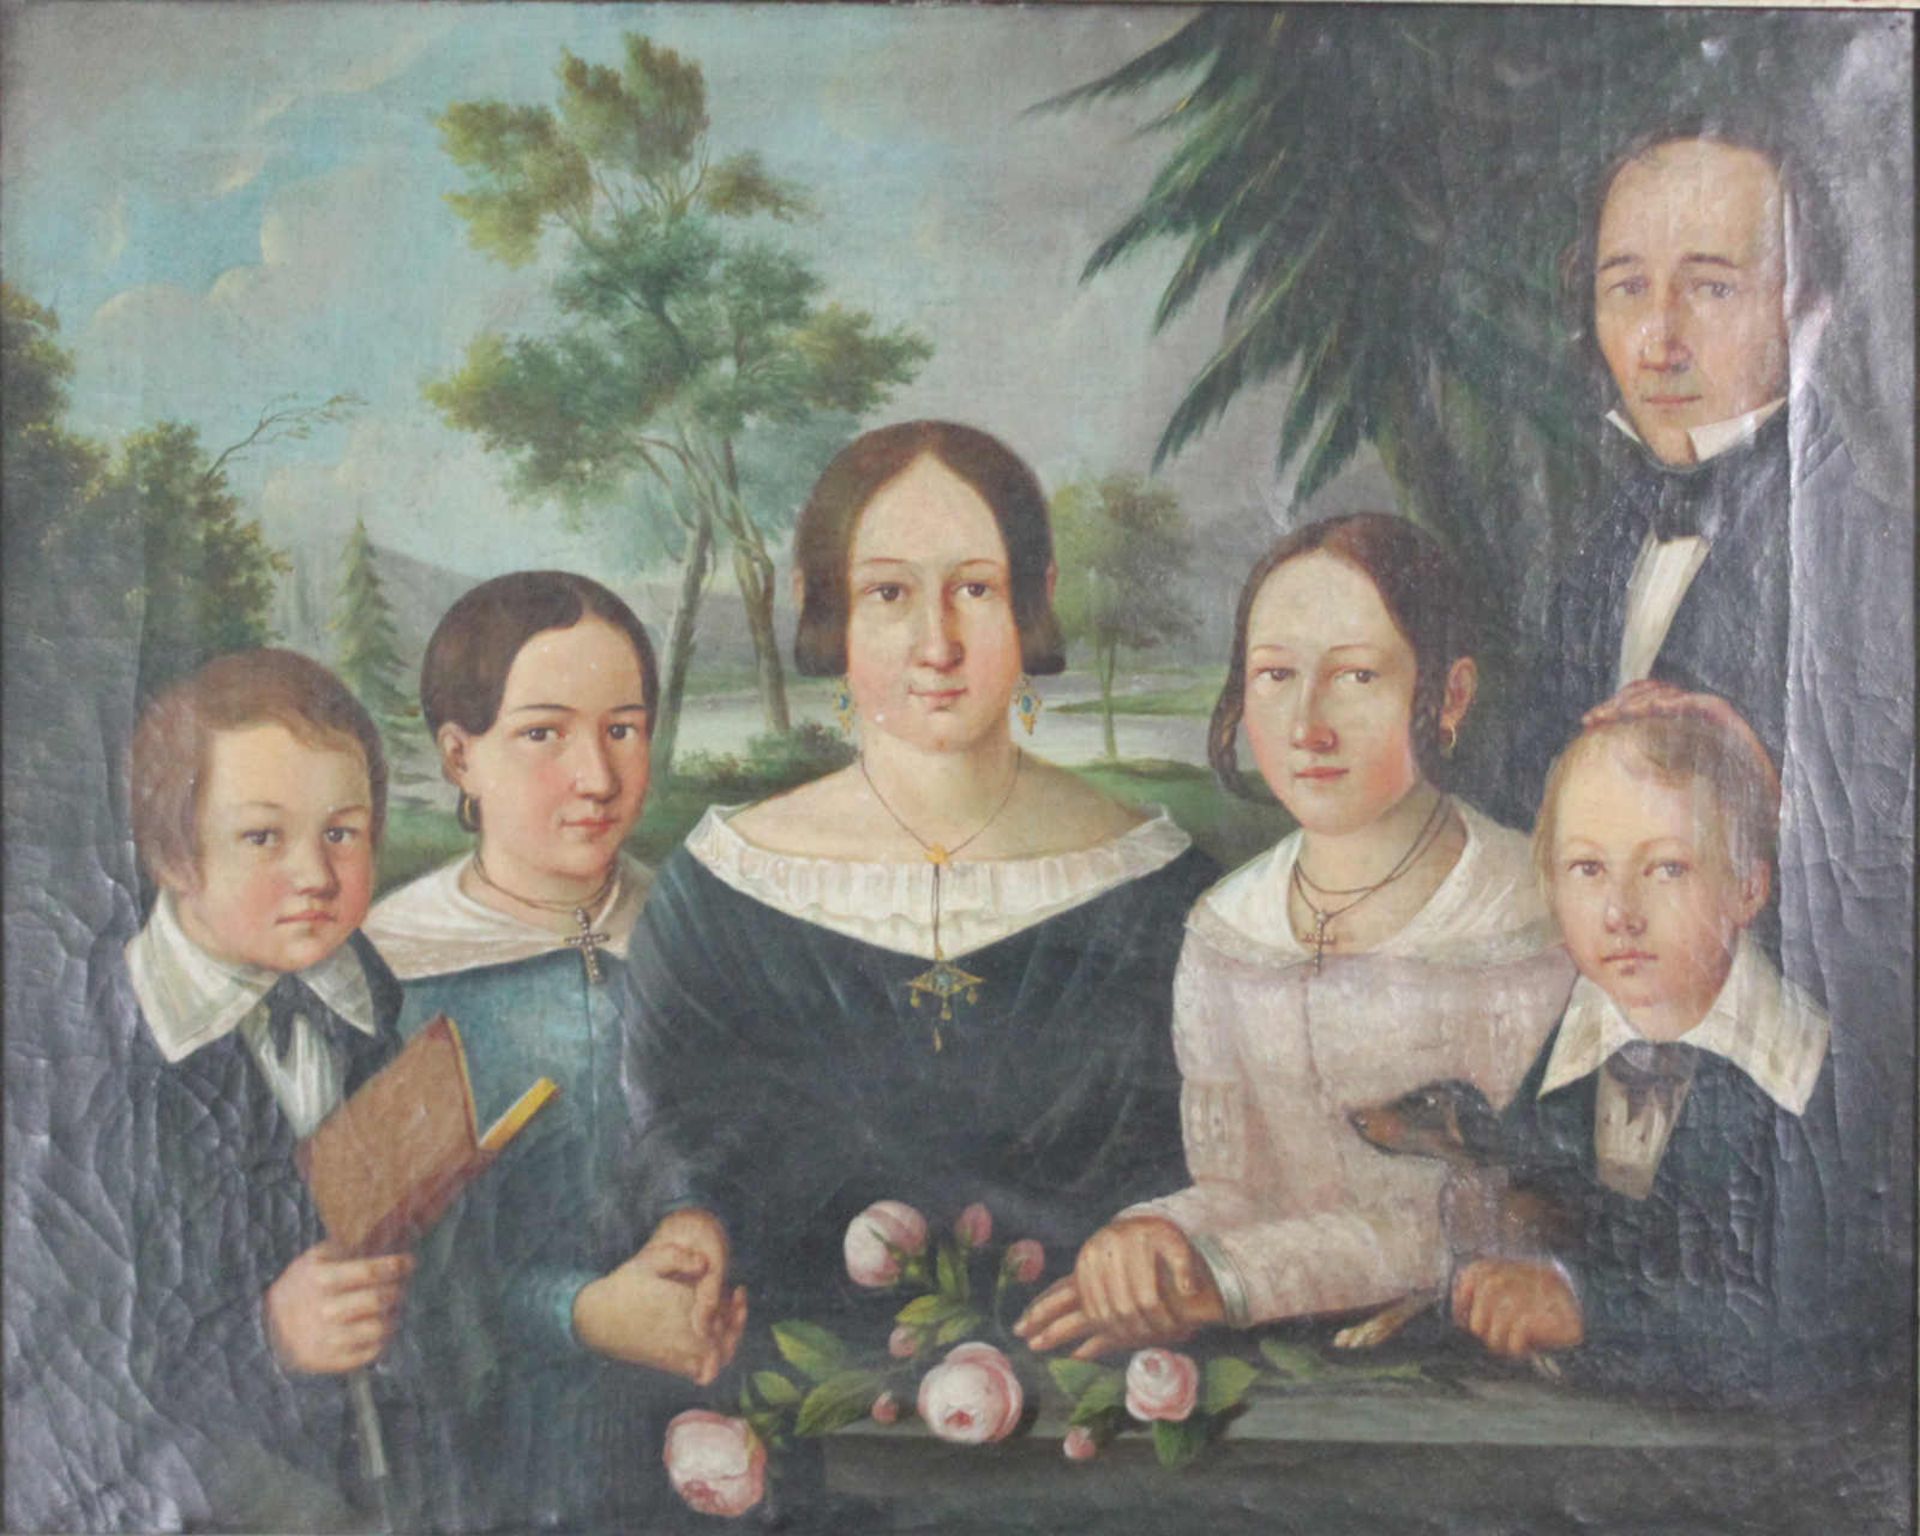 Portrait einer gutbürgerlichen Familie. Anonymist, 19. Jahrhundert. Öl auf Leinwand, guter